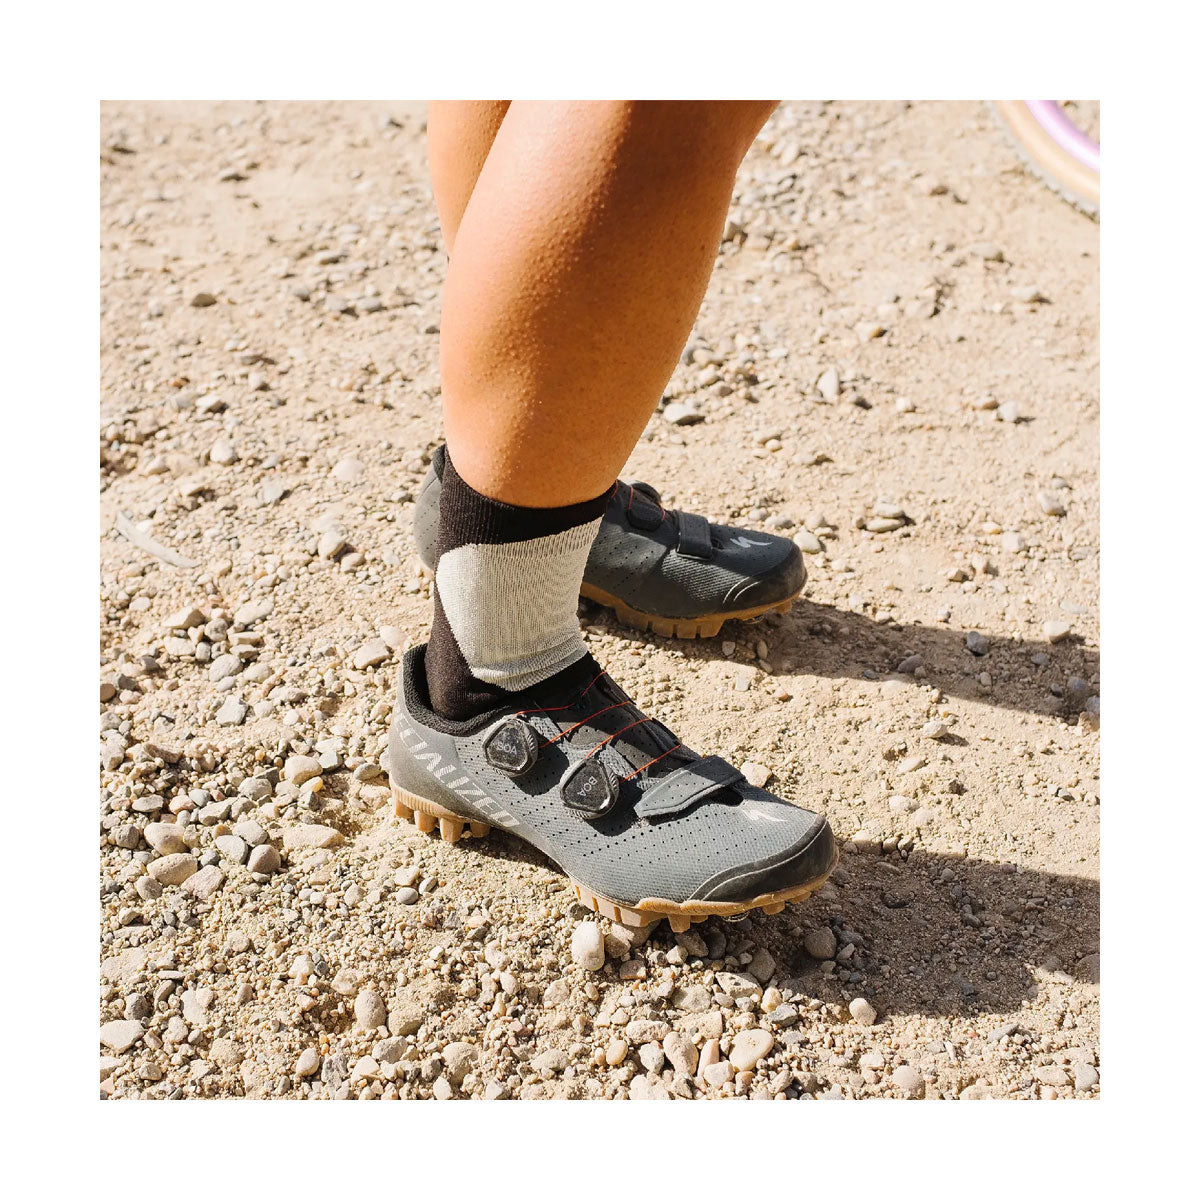 Topo Designs : Sport Sock : Black/Natural